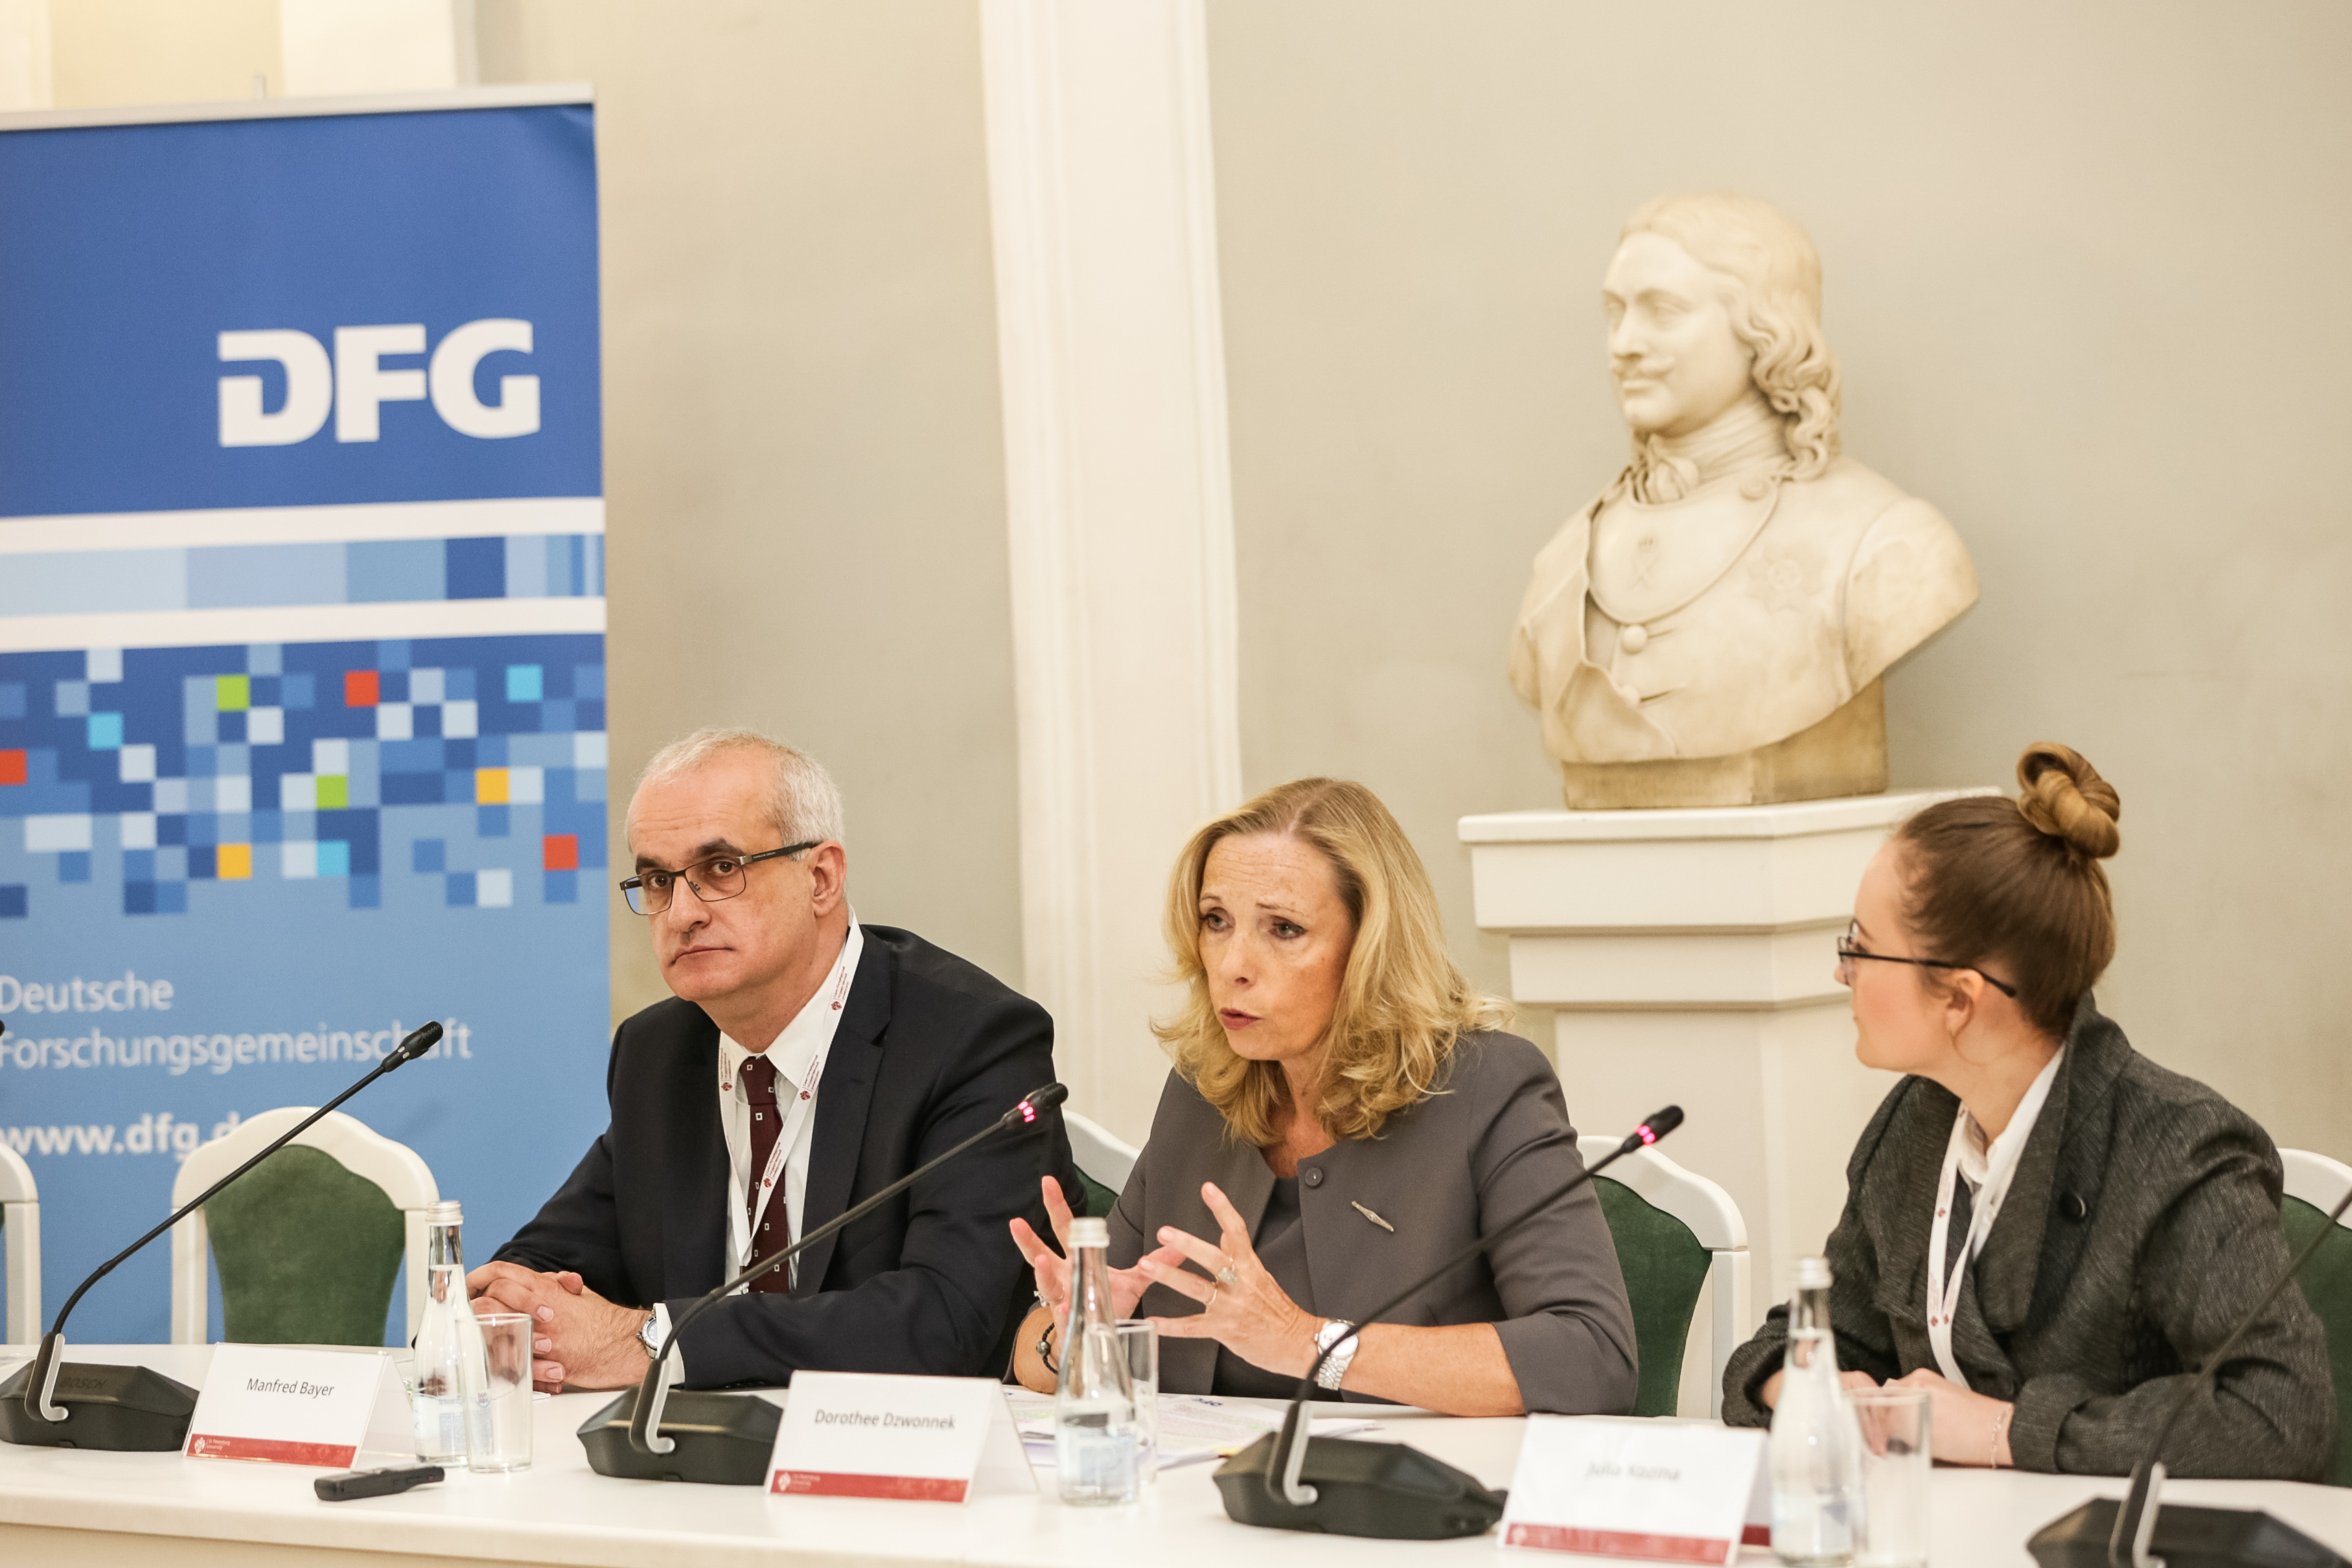 Pressekonferenz der DFG-Generalsekretärin Dorothee Dzwonnek an der SPBU, links SFB-Sprecher Manfred Bayer